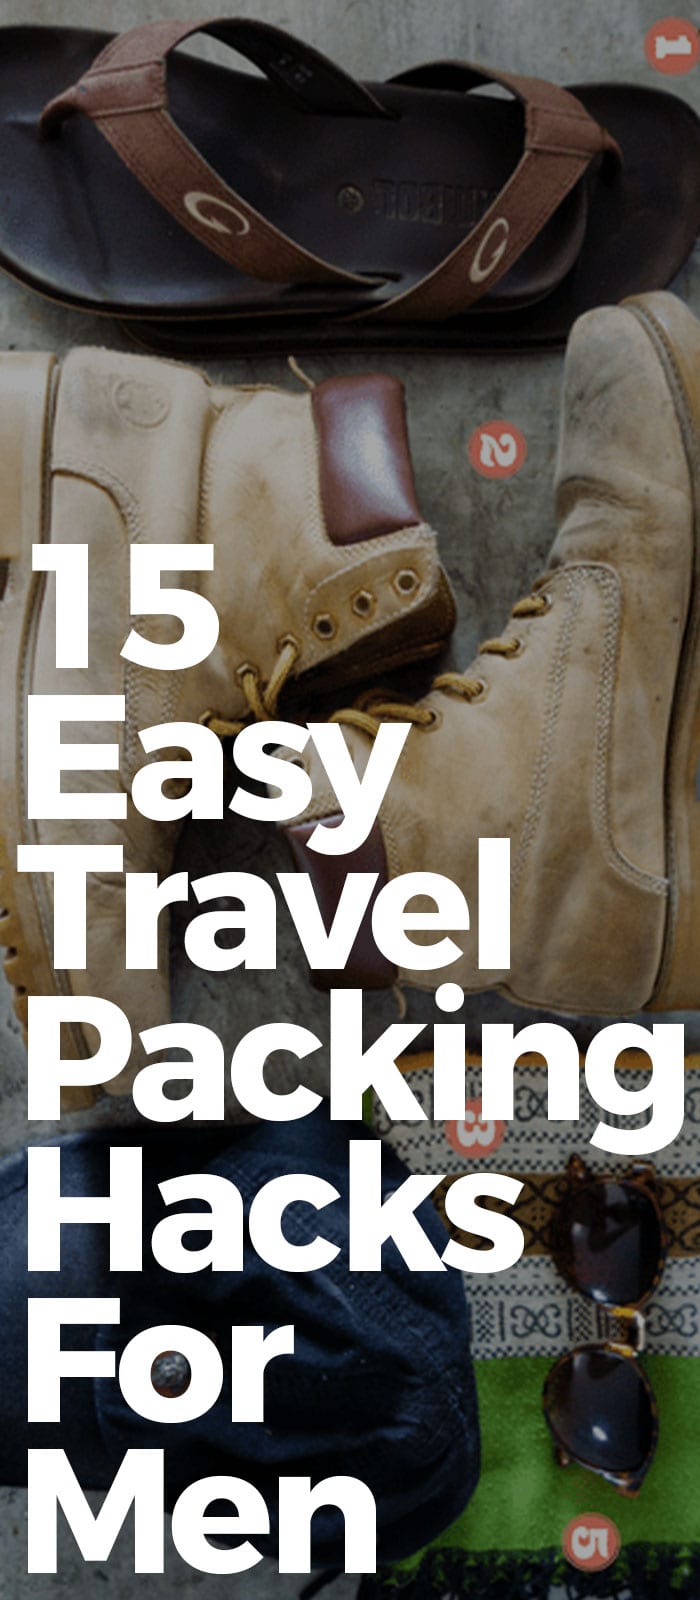 15 Easy Travel Packing Hacks For Men.